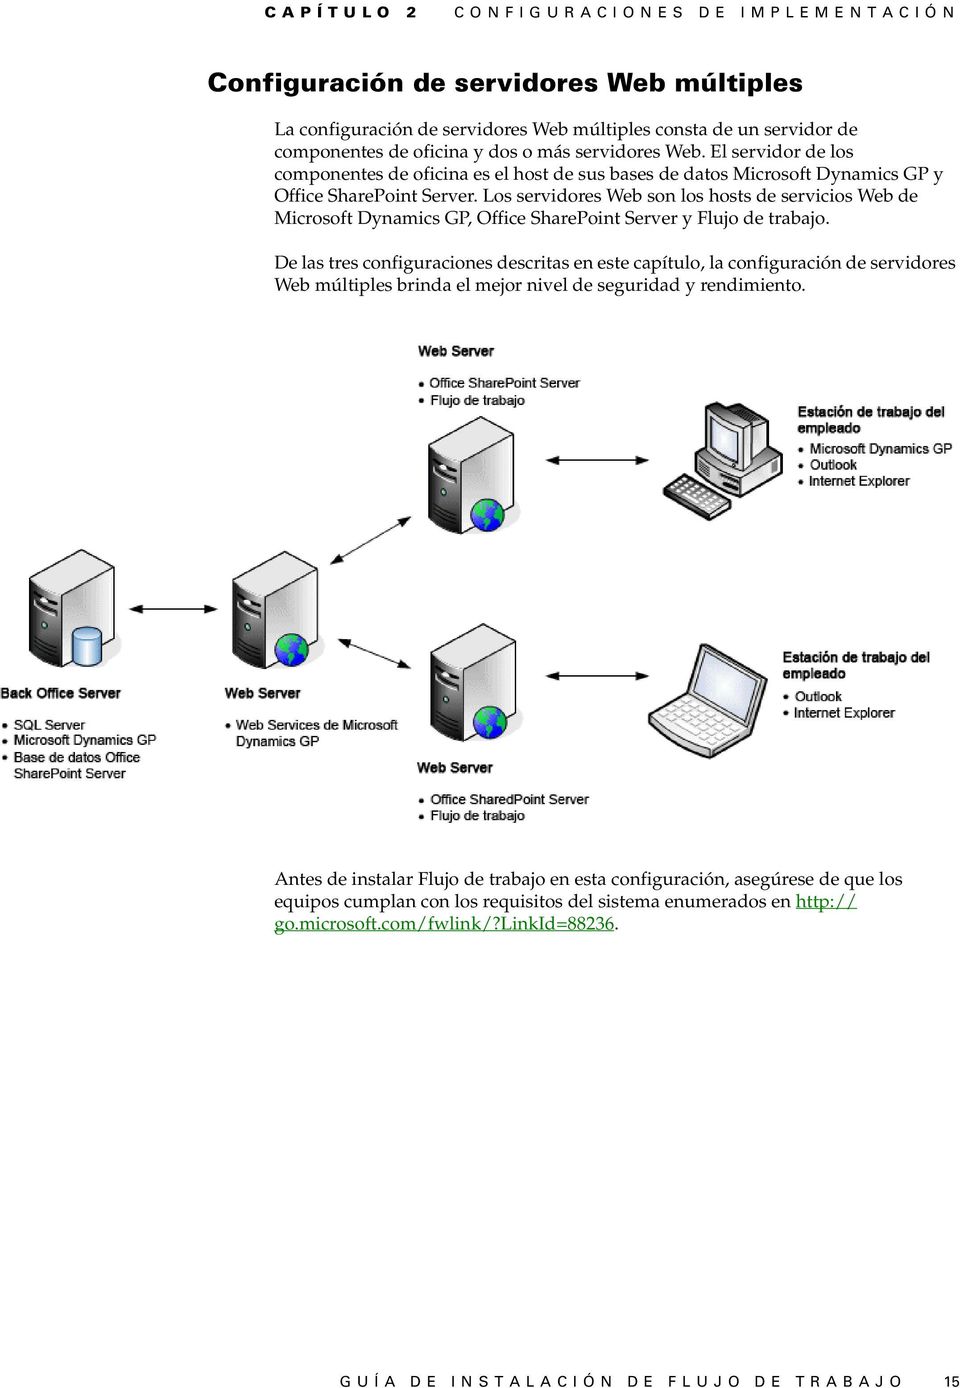 Los servidores Web son los hosts de servicios Web de Microsoft Dynamics GP, Office SharePoint Server y Flujo de trabajo.